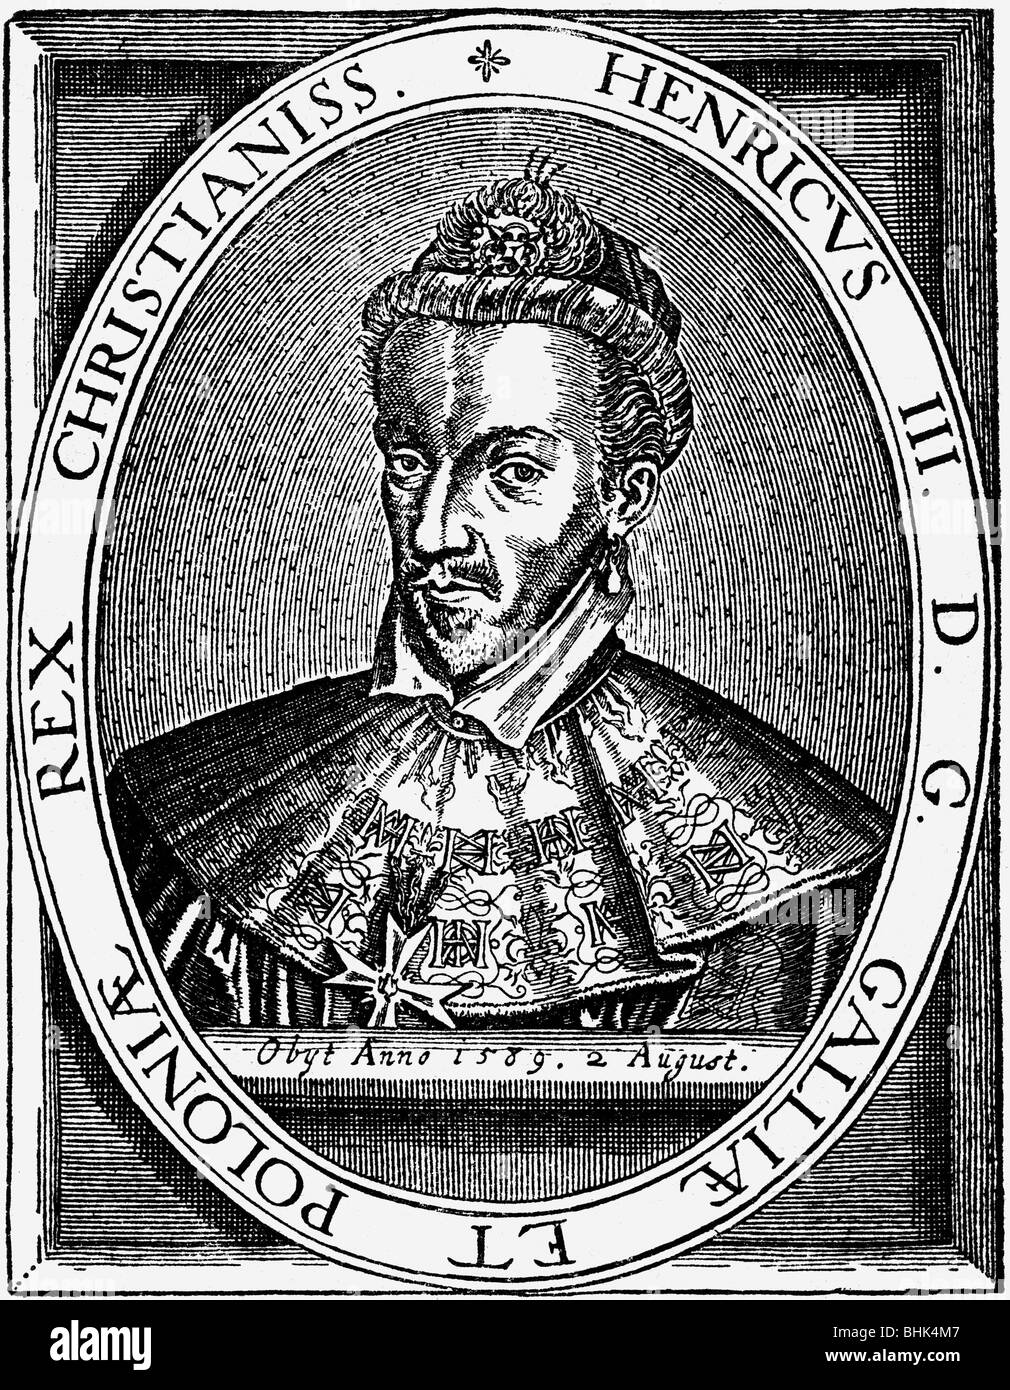 Enrico III, 19.9.1551 - 2.8 1589, Re di Francia 30.5.1574 - 2.8.1589, ritratto, incisione su rame, XVI secolo, , artista del diritto d'autore non deve essere cancellata Foto Stock